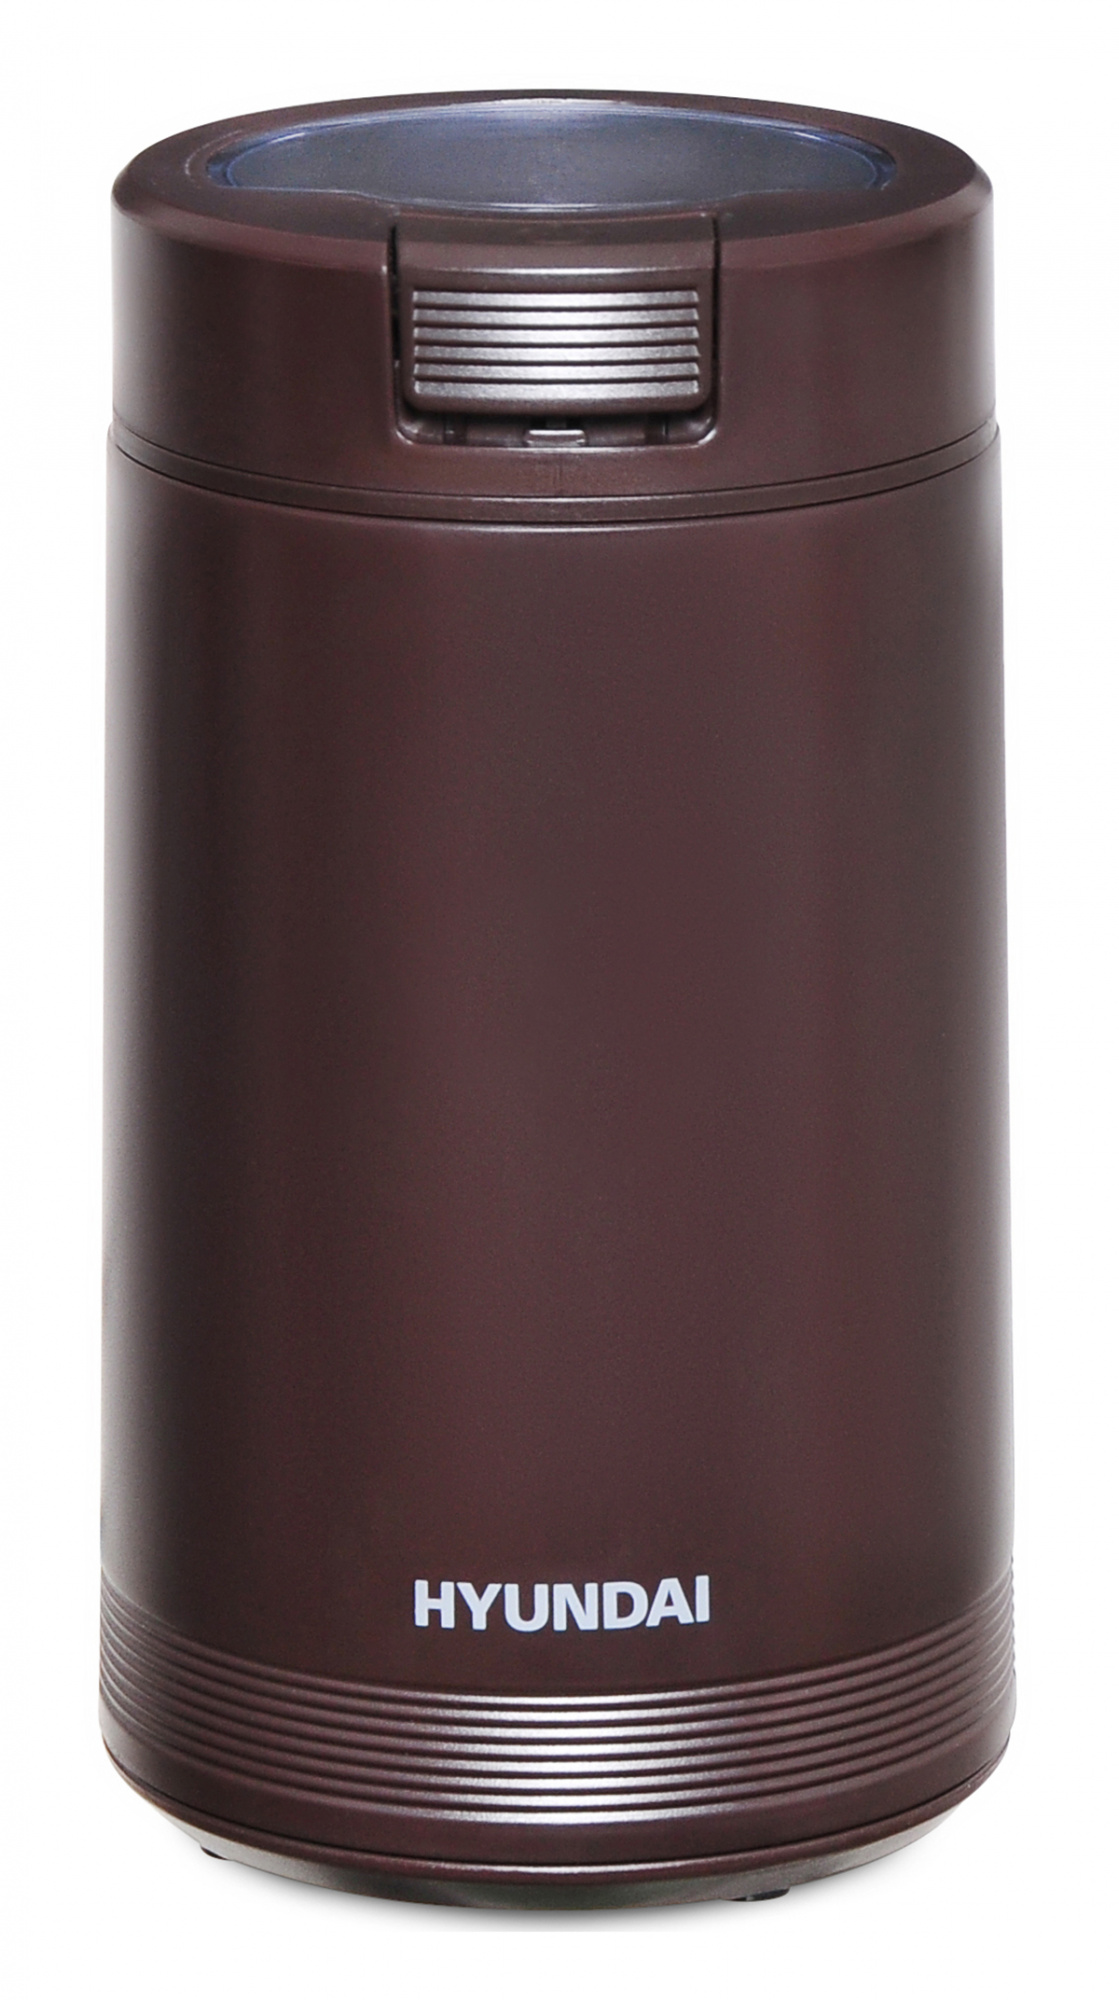 Кофемолка Hyundai HYC-G4251 Braun кофемолка galaxy gl 0906 электрическая 200 вт 60 г нож из нержавеющей стали